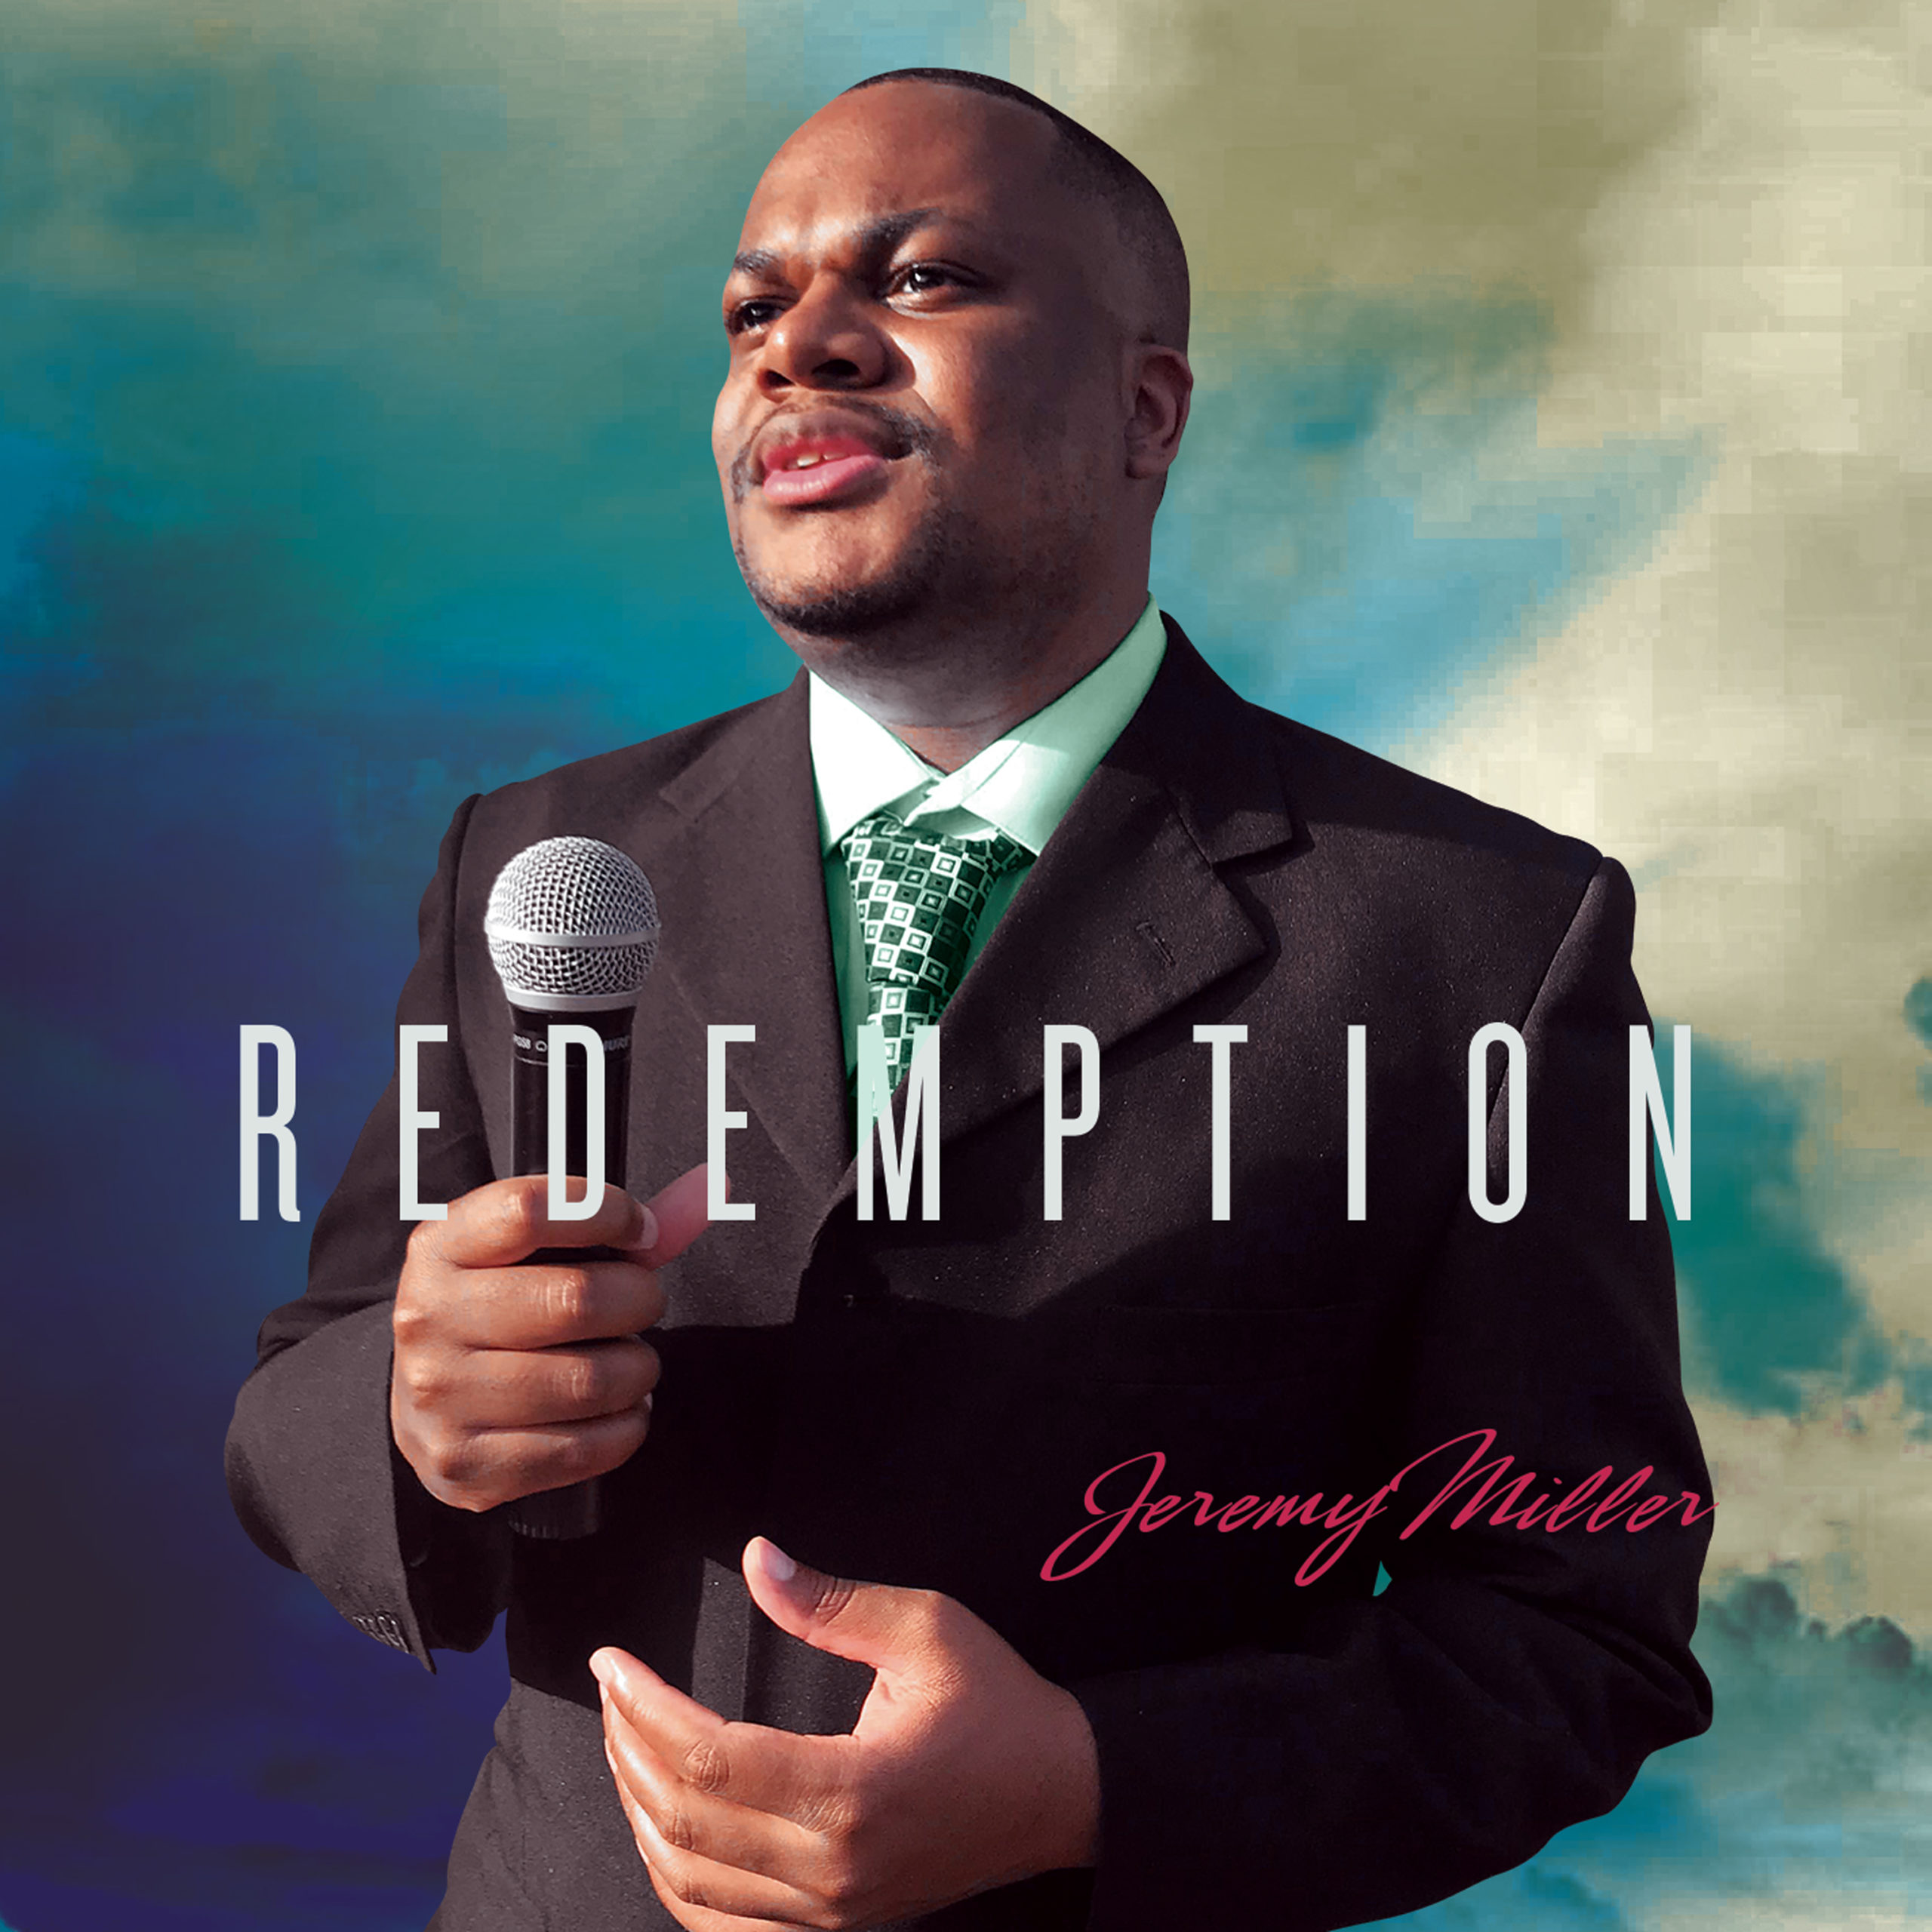 Jeremy Vance Miller album cover "Redemption"